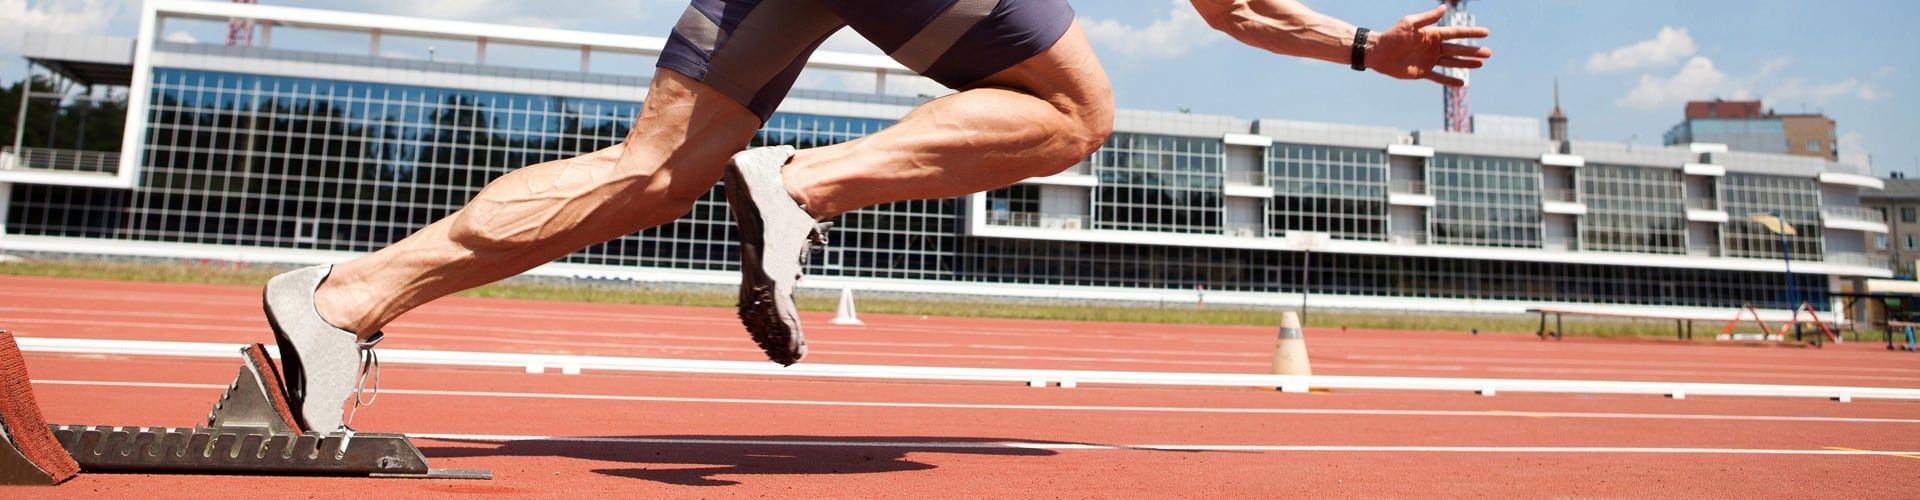 Покрытия для бега и легкой атлетики - Спорт высших достижений!